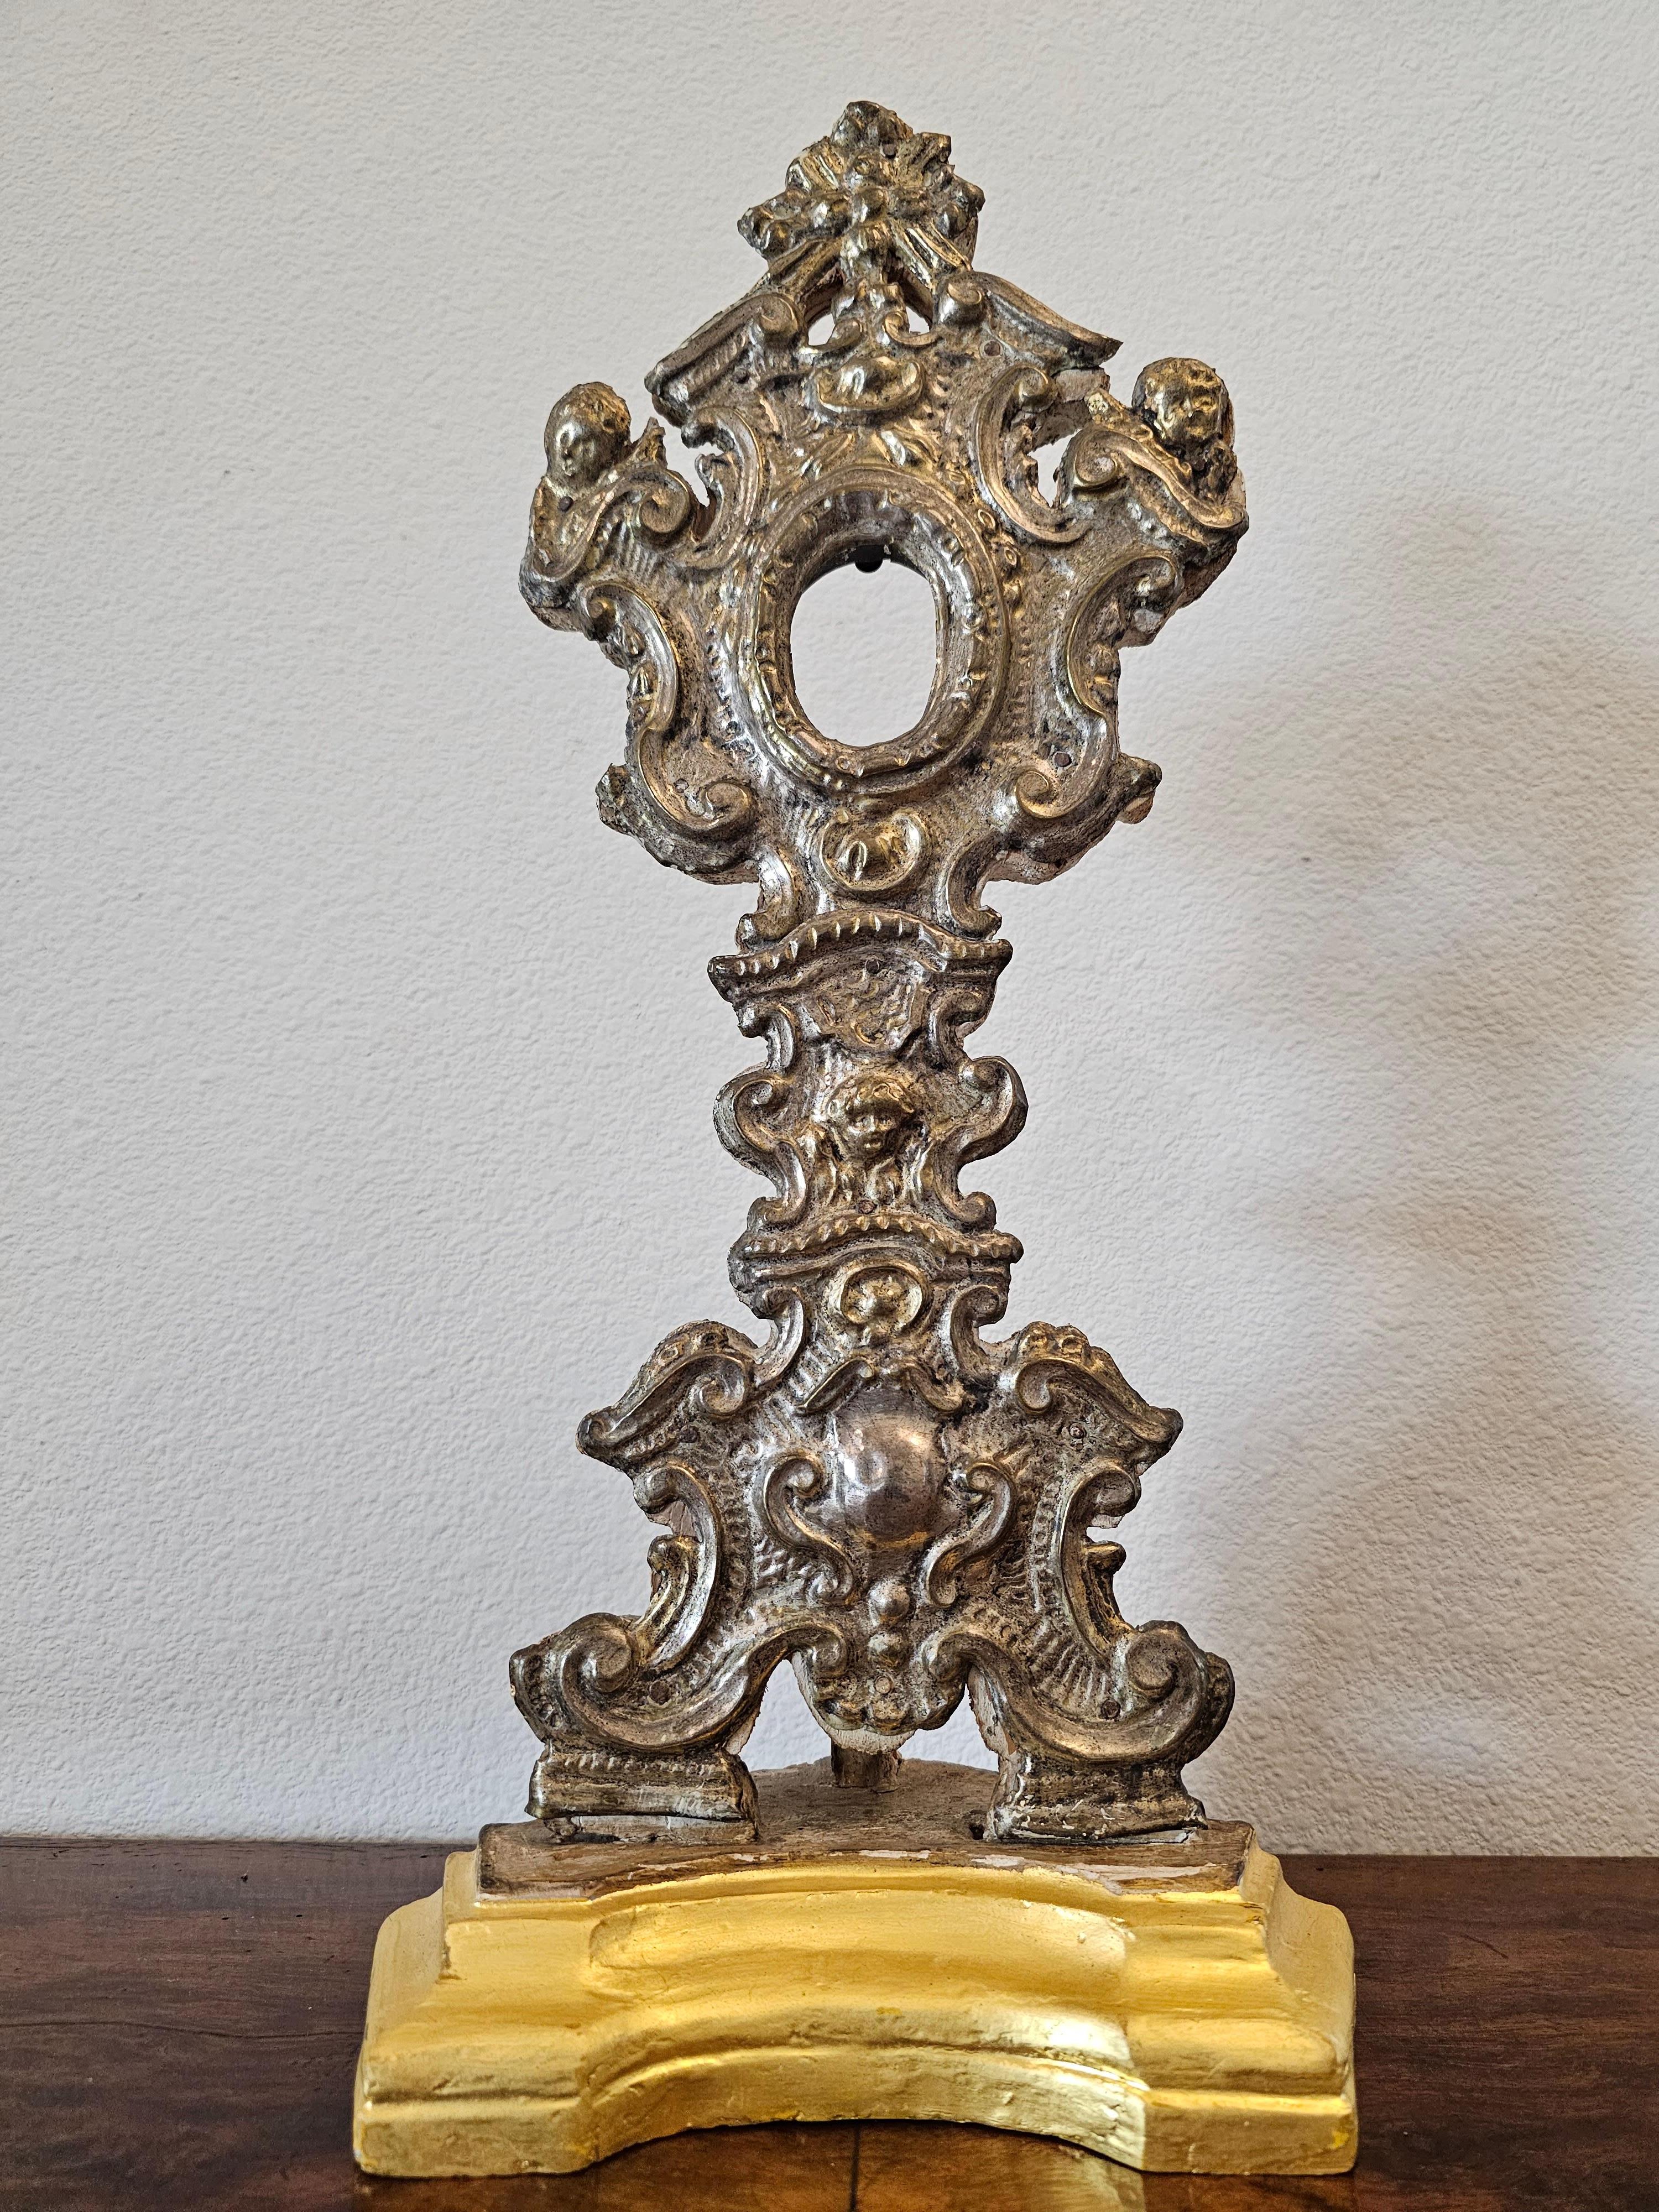 Superbe reliquaire ancien de style baroque italien en métal argenté et bois doré. Vers 1770-1820.

Fabriqué en Italie à la fin du XVIIIe siècle / début du XIXe siècle, sur commande de l'église pour exposer une importante relique religieuse, forme